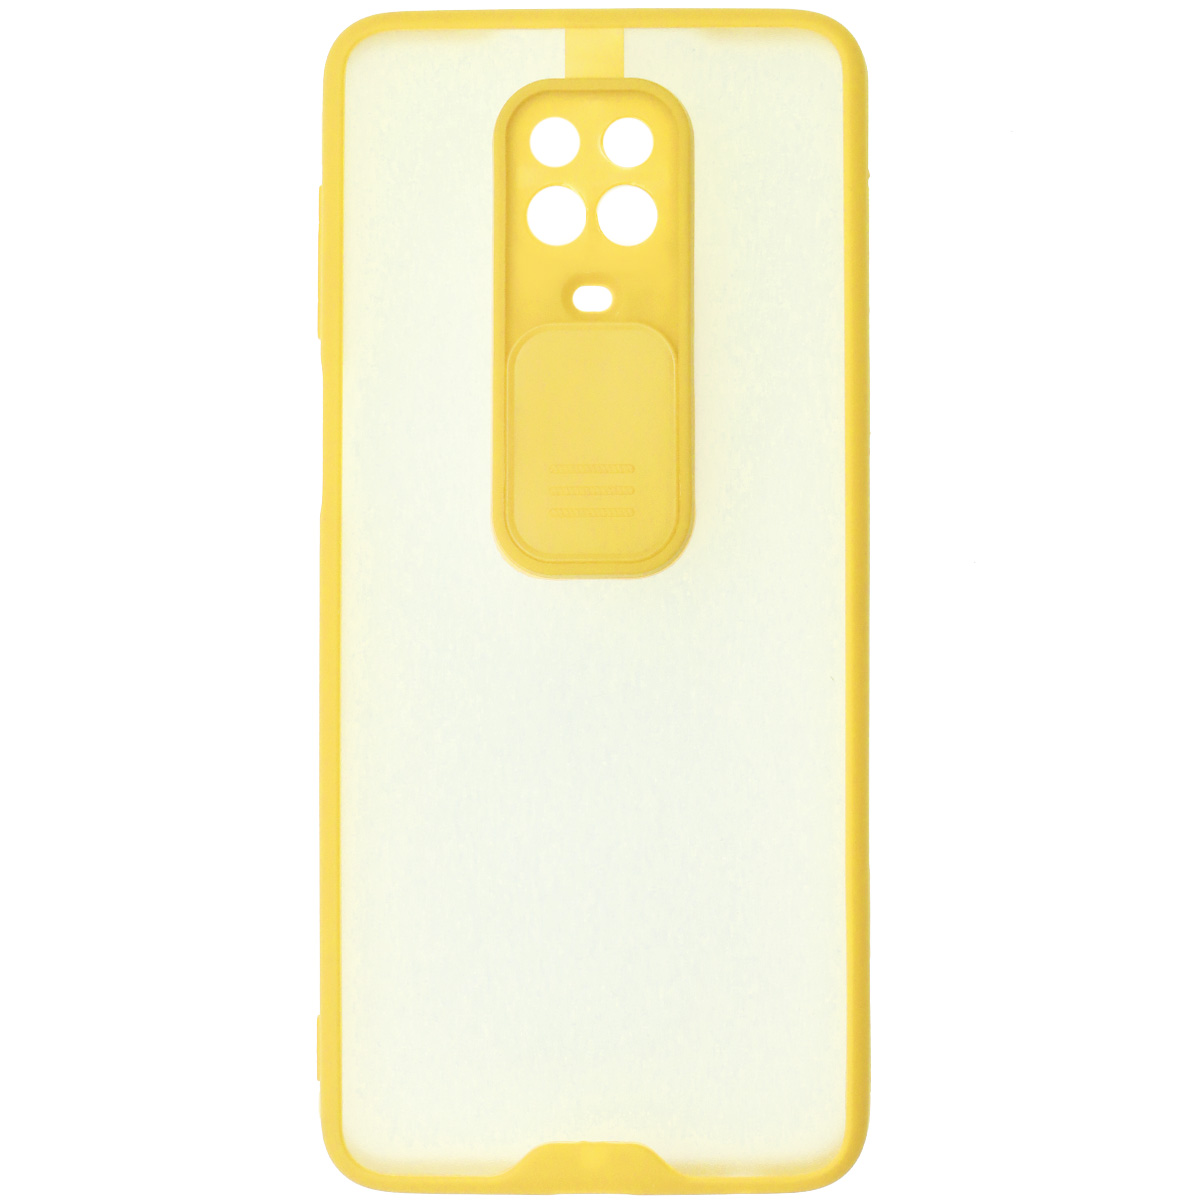 Чехол накладка LIFE TIME для XIAOMI Redmi Note 9 Pro, Redmi Note 9S, силикон, пластик, матовый, со шторкой для защиты задней камеры, цвет окантовки желтый